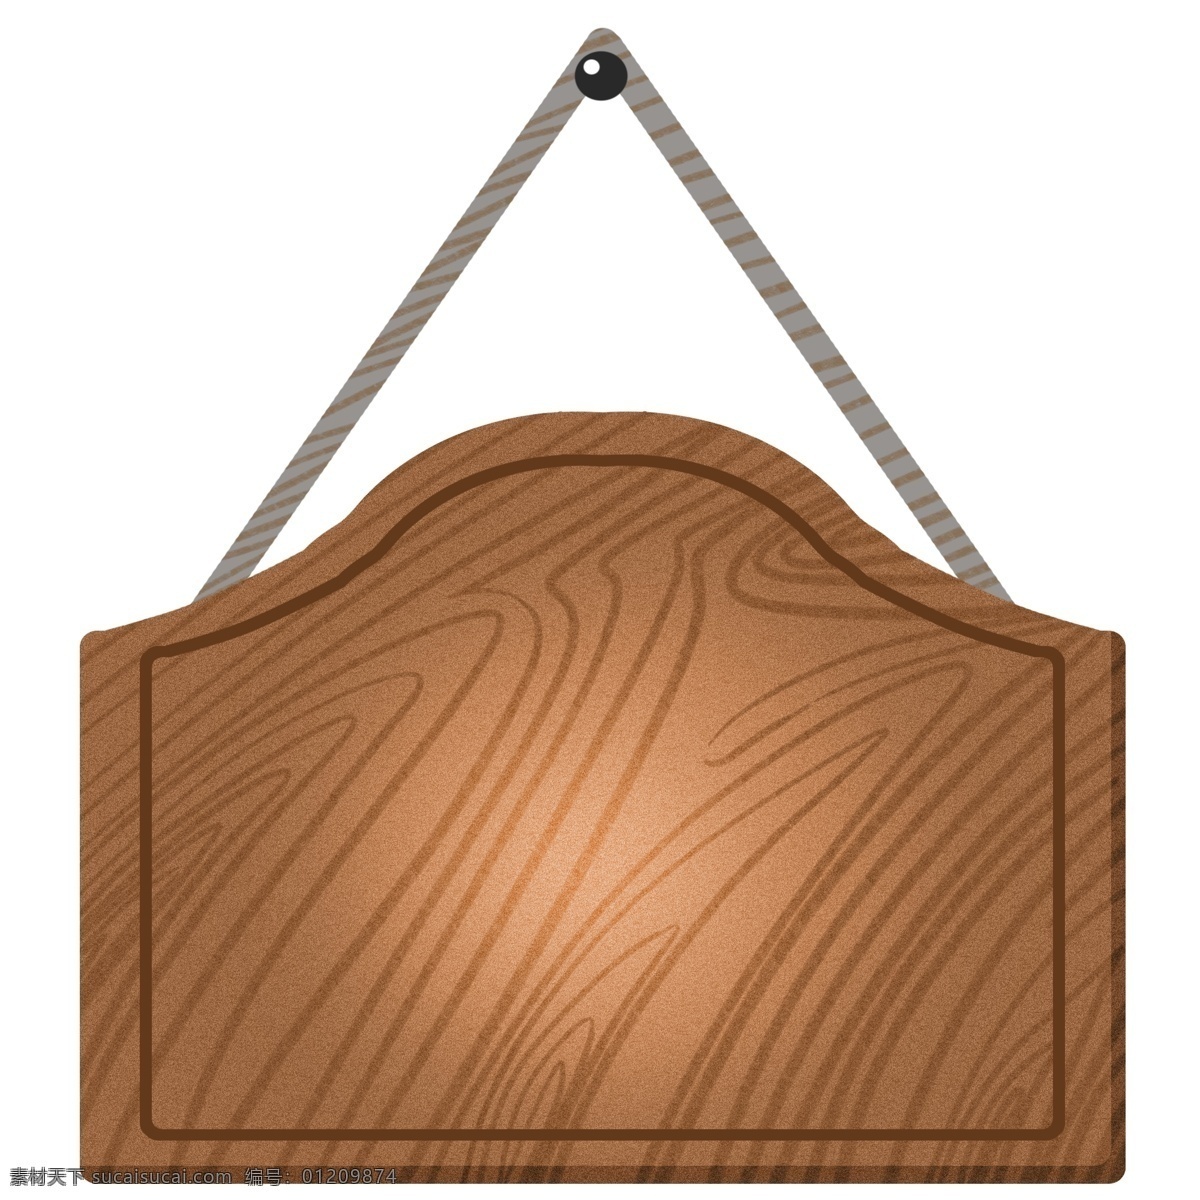 好看 木质 卡通 插画 好看的木质 卡通插画 木质插画 木头 木板 木块 木材 材料 结实的木质